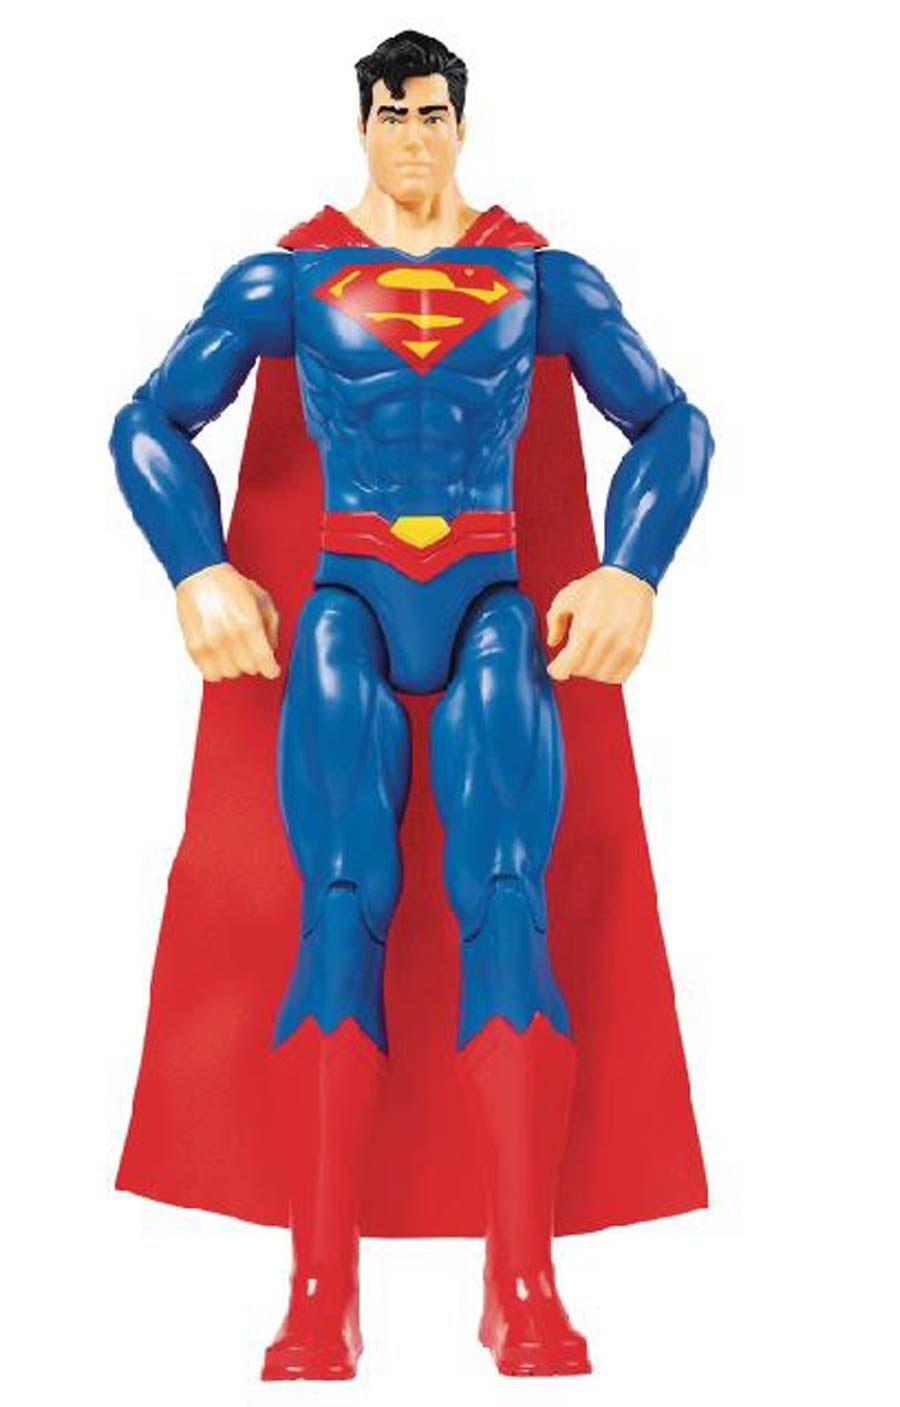 DC Universe 12-Inch Action Figure Assortment 202001 - Superman